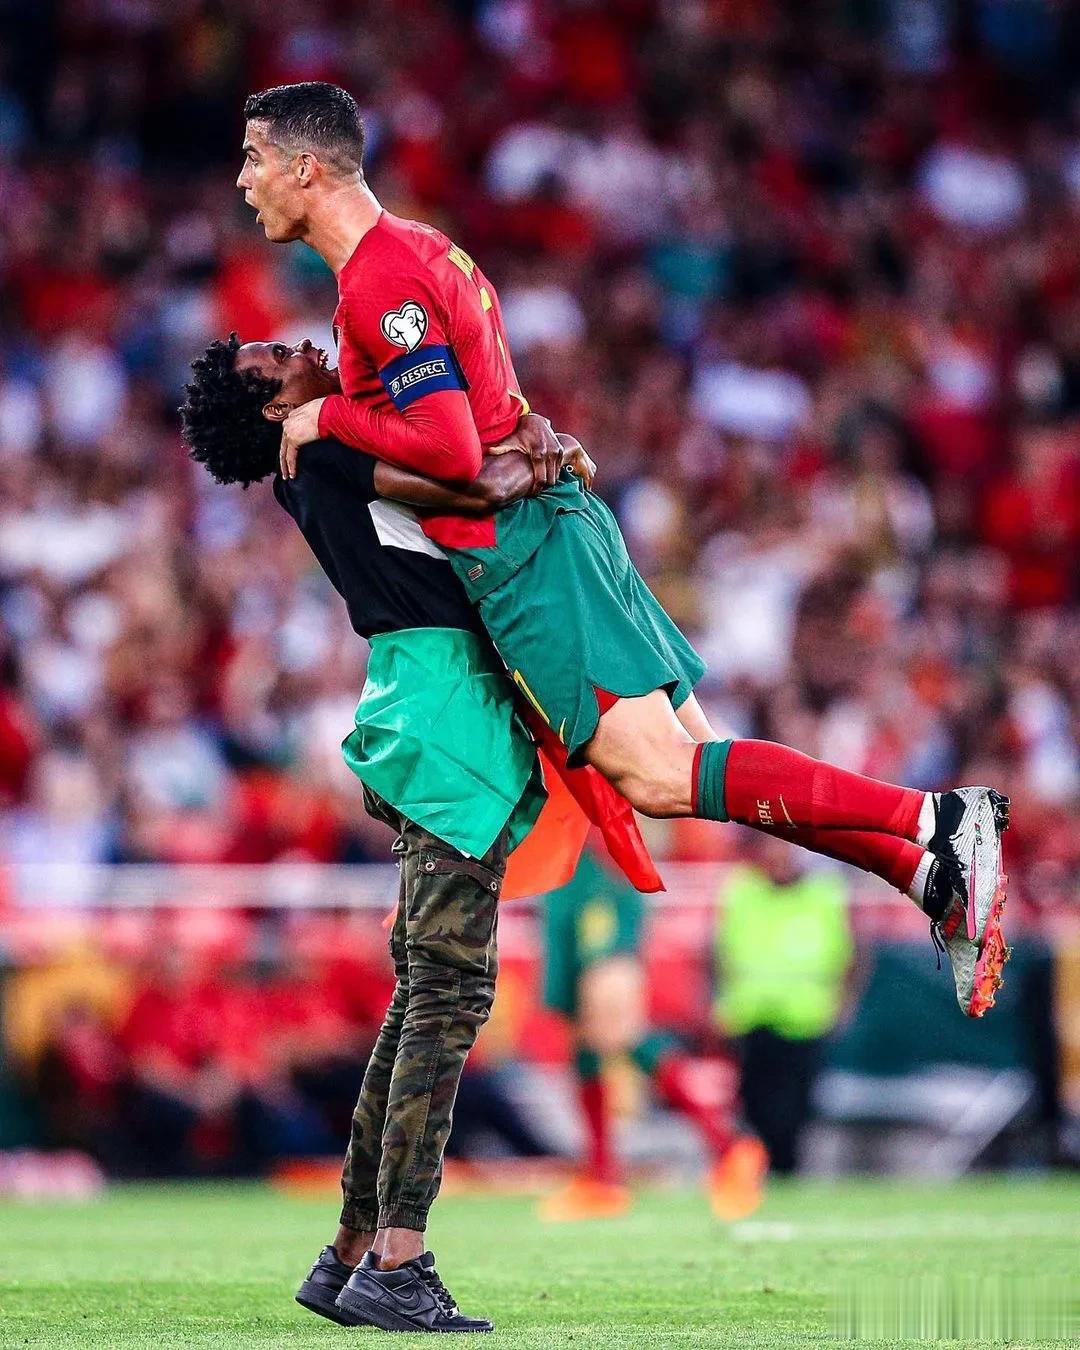 图评丨球迷冲进场内拥抱偶像，似乎已经成为＂球王＂标配了！

面对波黑比赛，葡萄牙